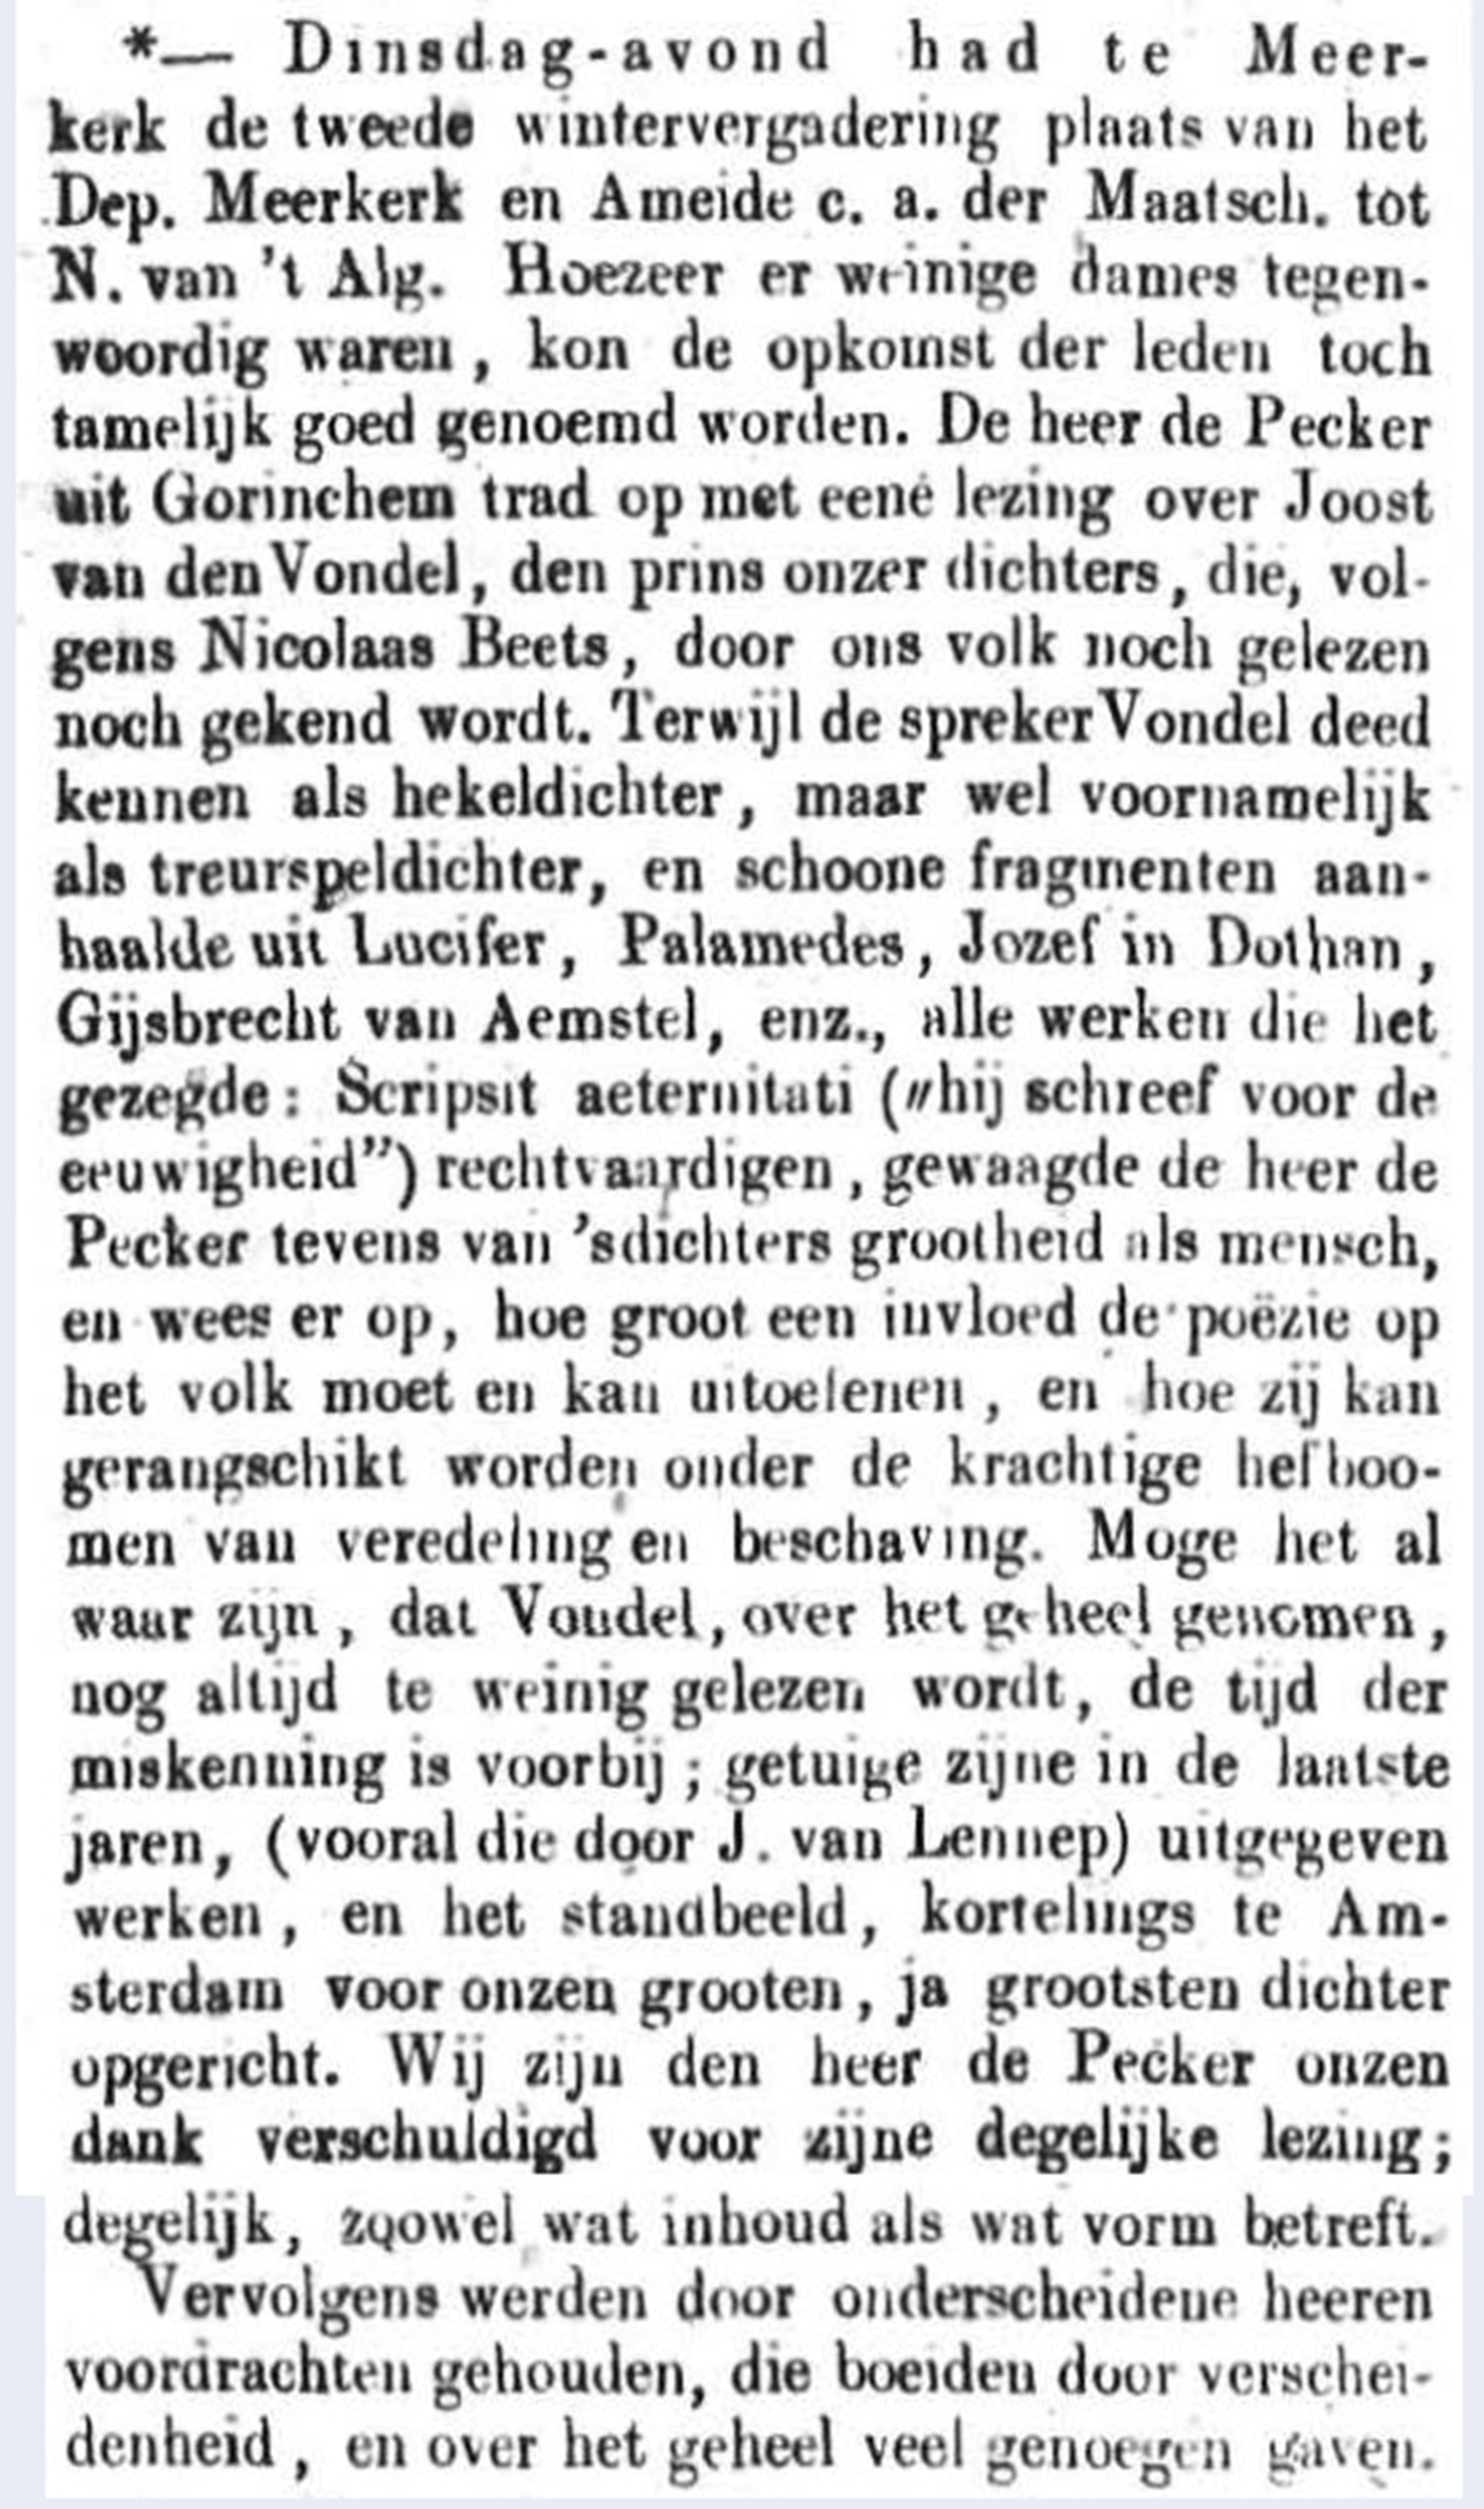 Schoonhovensche Courant 00127 1871-12-03 artikel 3